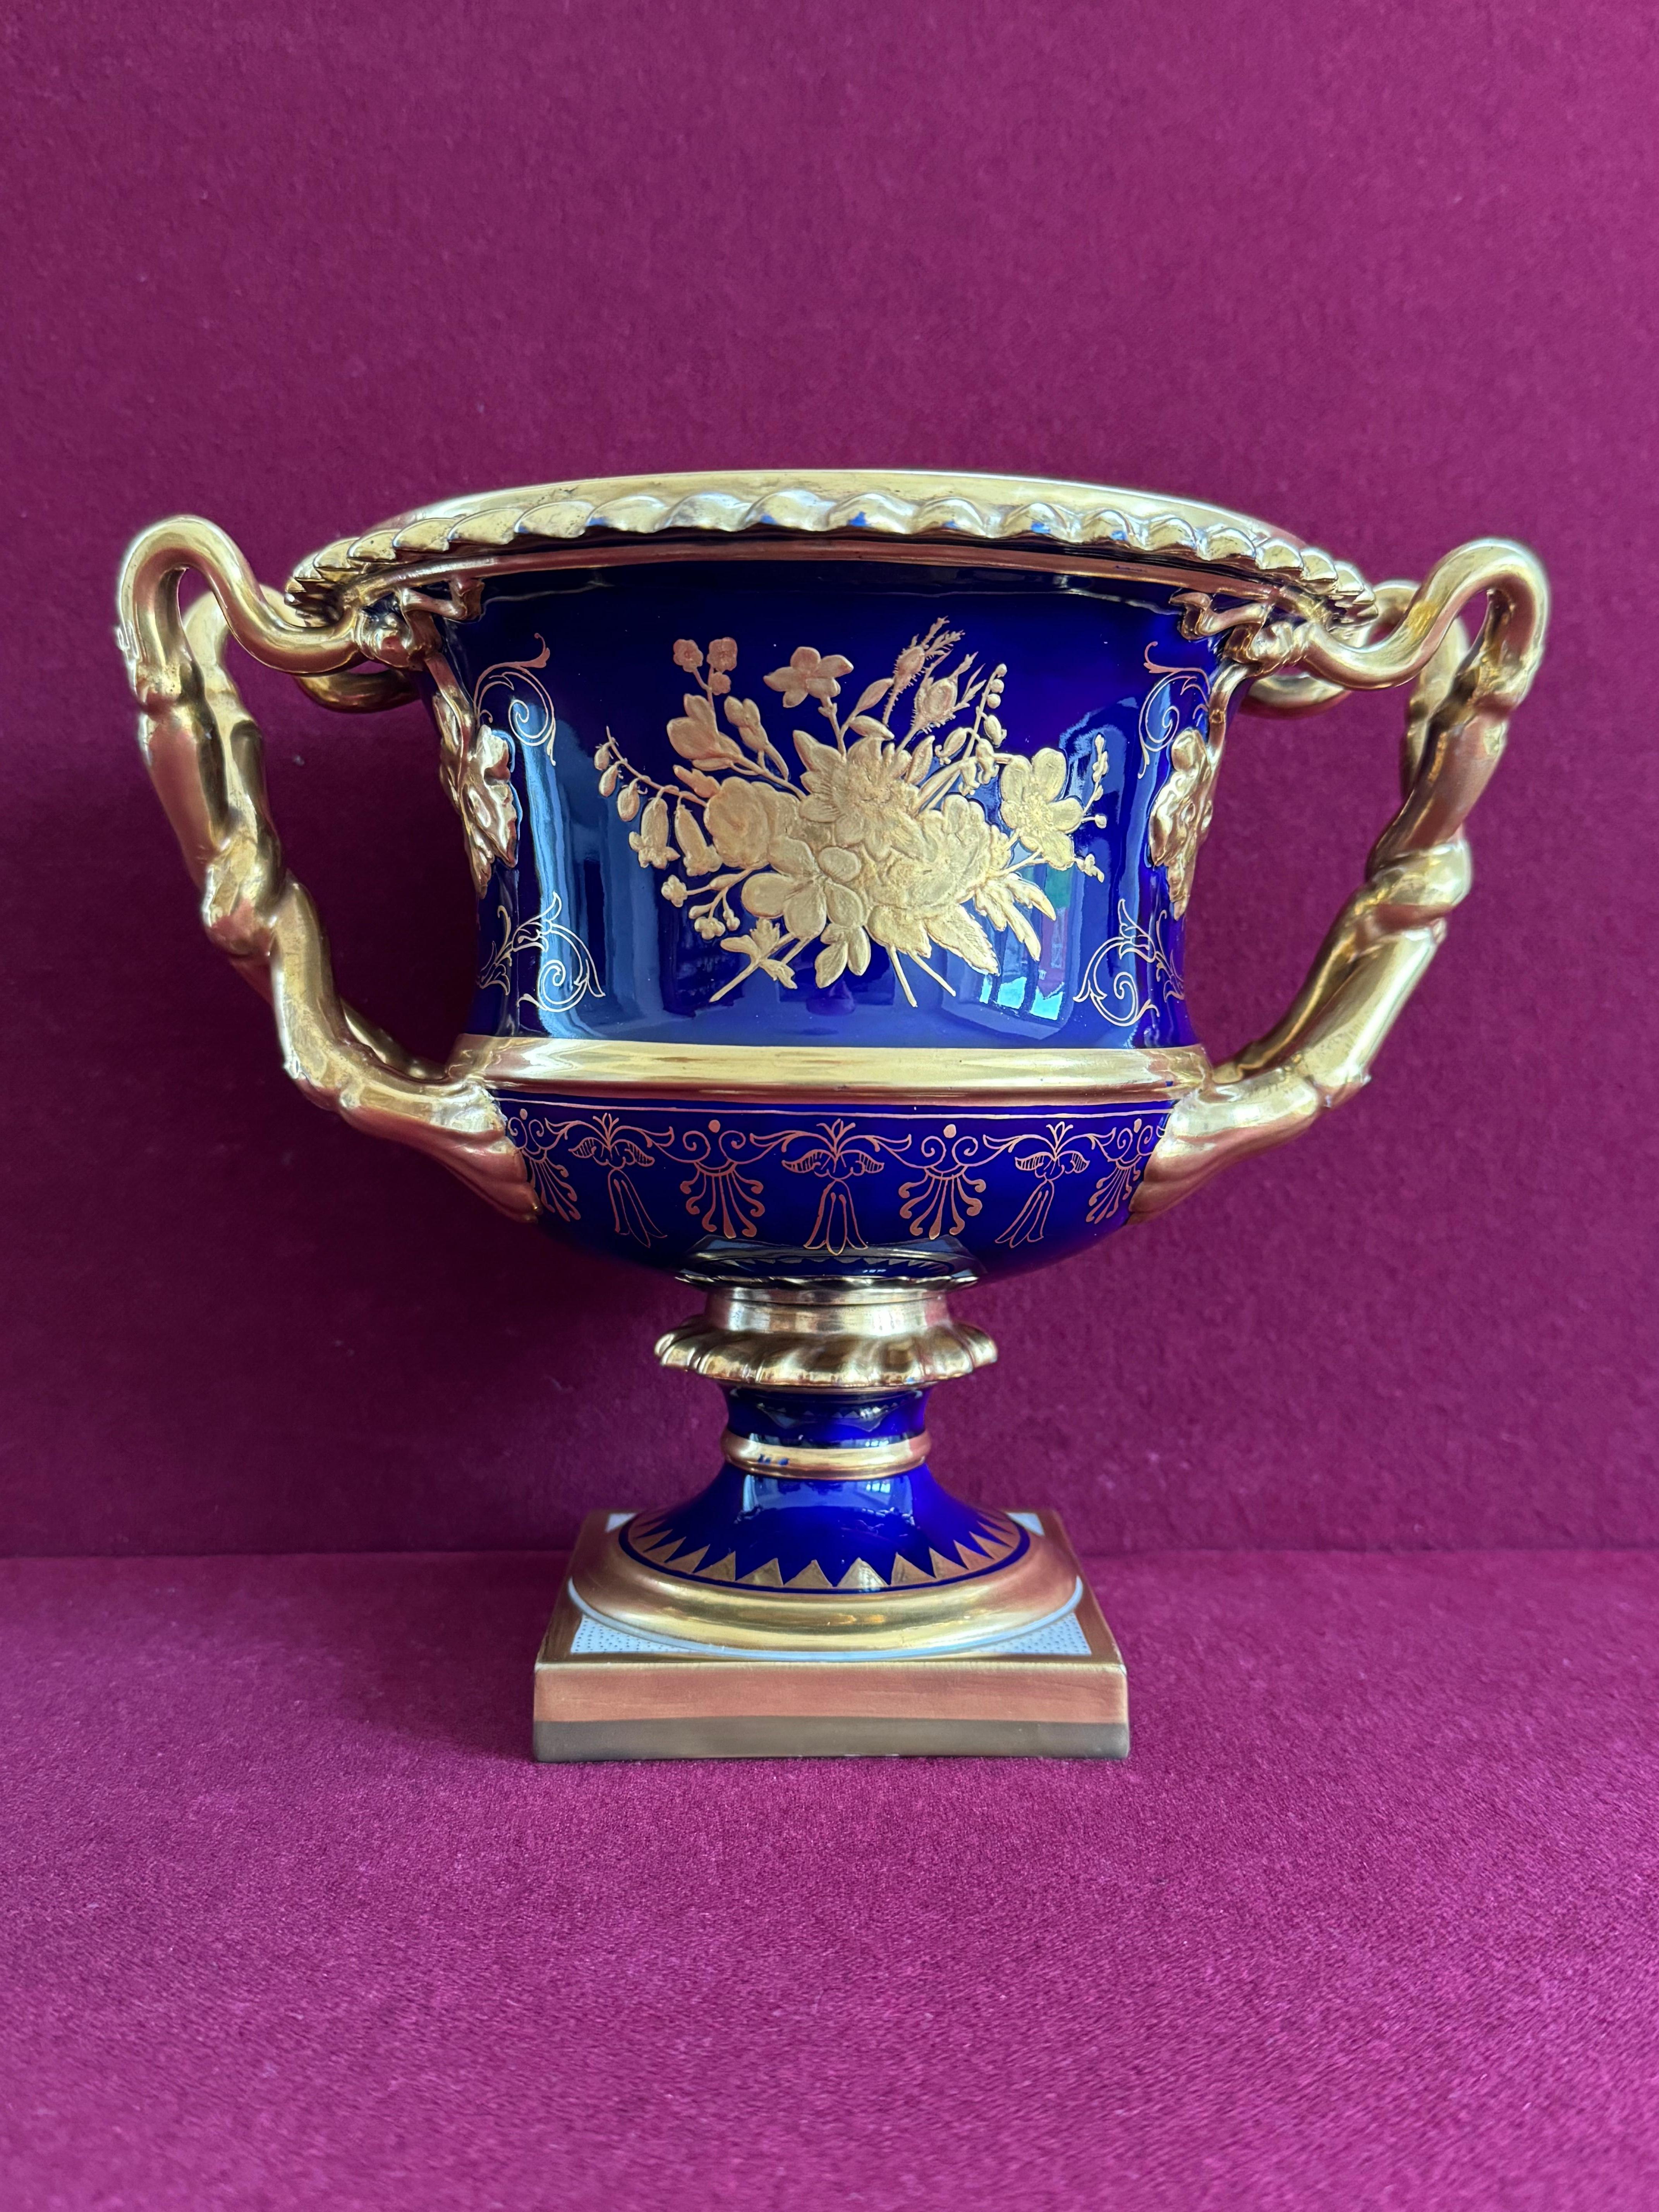 Eine Flight, Barr And Barr Worcester 'Warwick' Vase, CIRCA 1815-20. Dekoriert mit einem vergoldeten, gadronierten Rand, vergoldeten, gedrehten, doppelten Rankenstielen und Blattgriffen sowie vergoldetem Blumen- und Rollendekor auf kobaltblauem